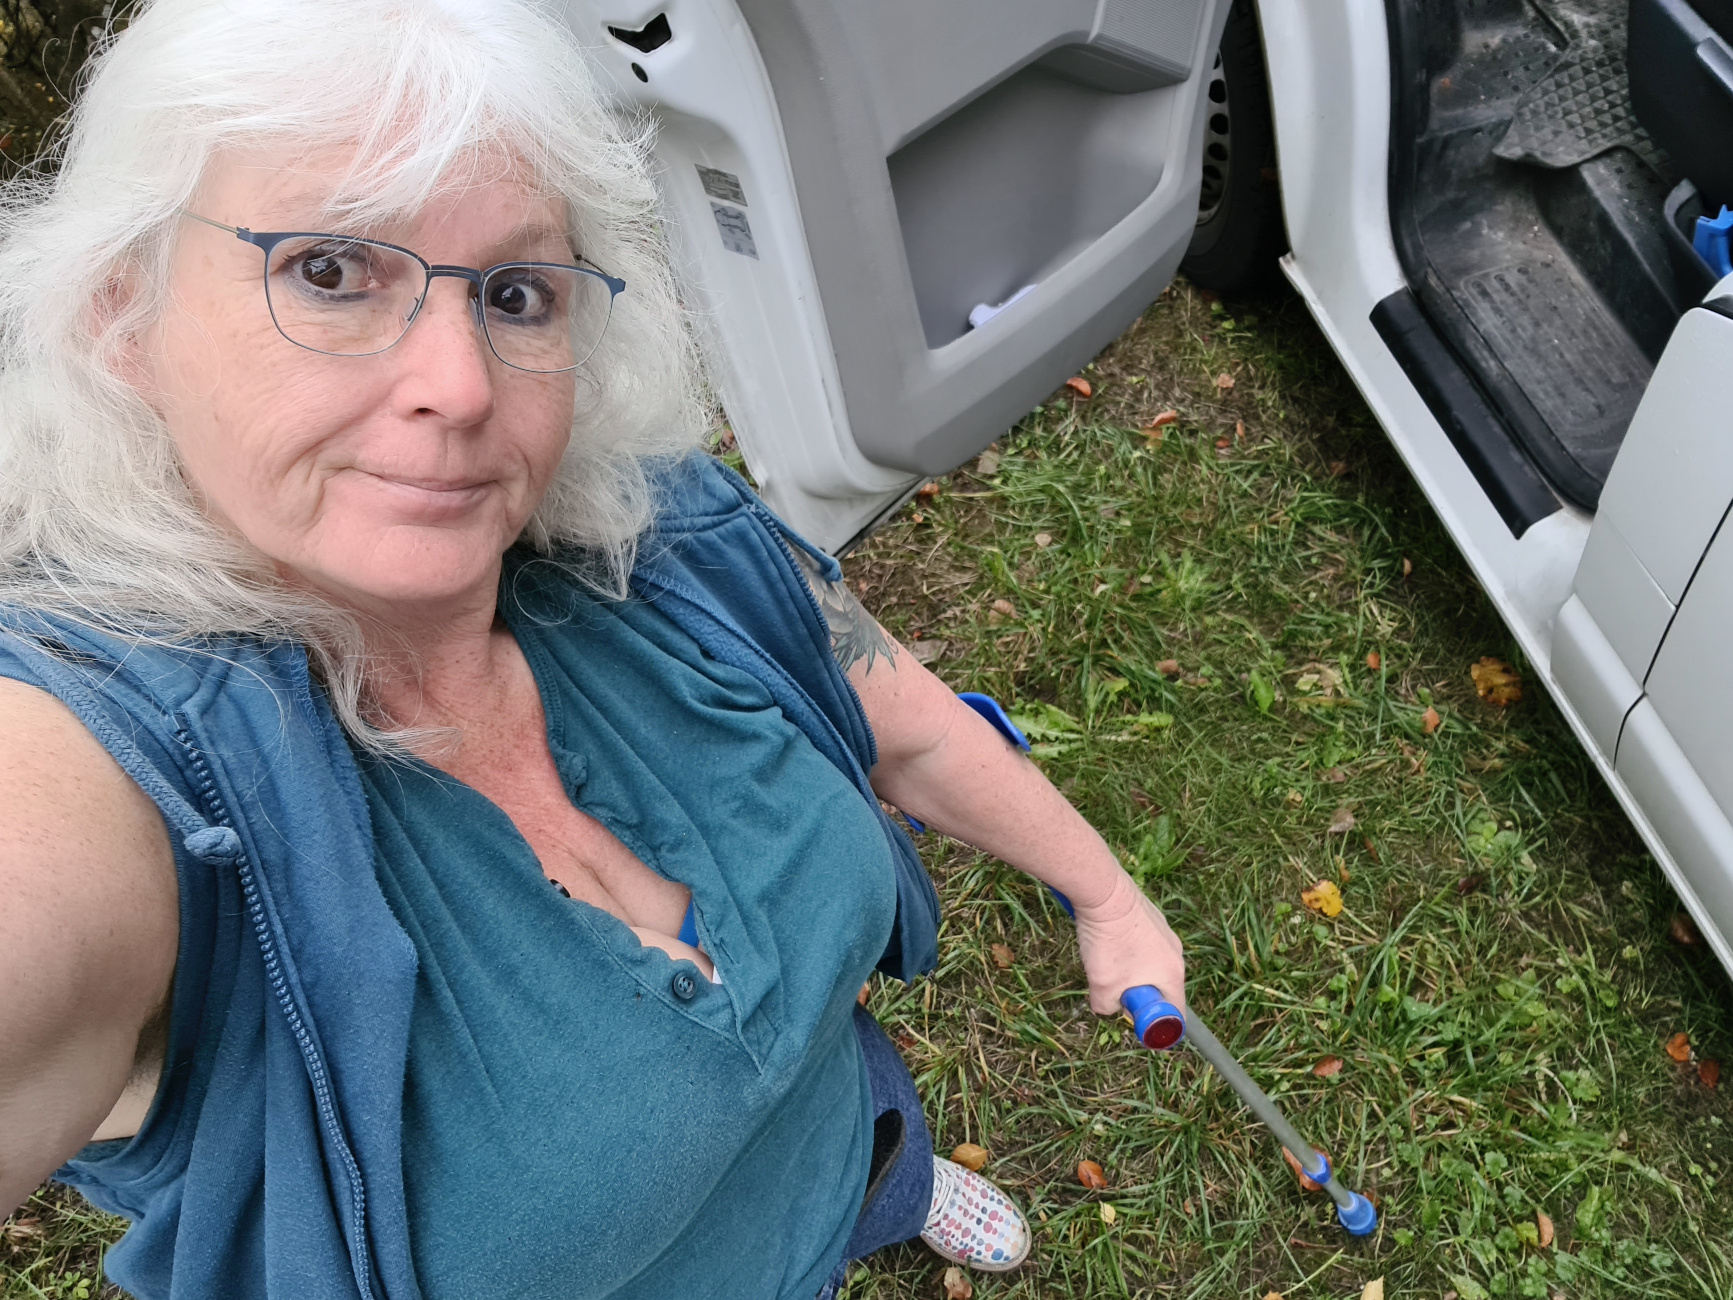 Frau mit langen weißen Locken und Brille schaut grinsend von unten in die Kamera, sie steht an einem Auto auf Wiesengrün und hält eine blau Krücke